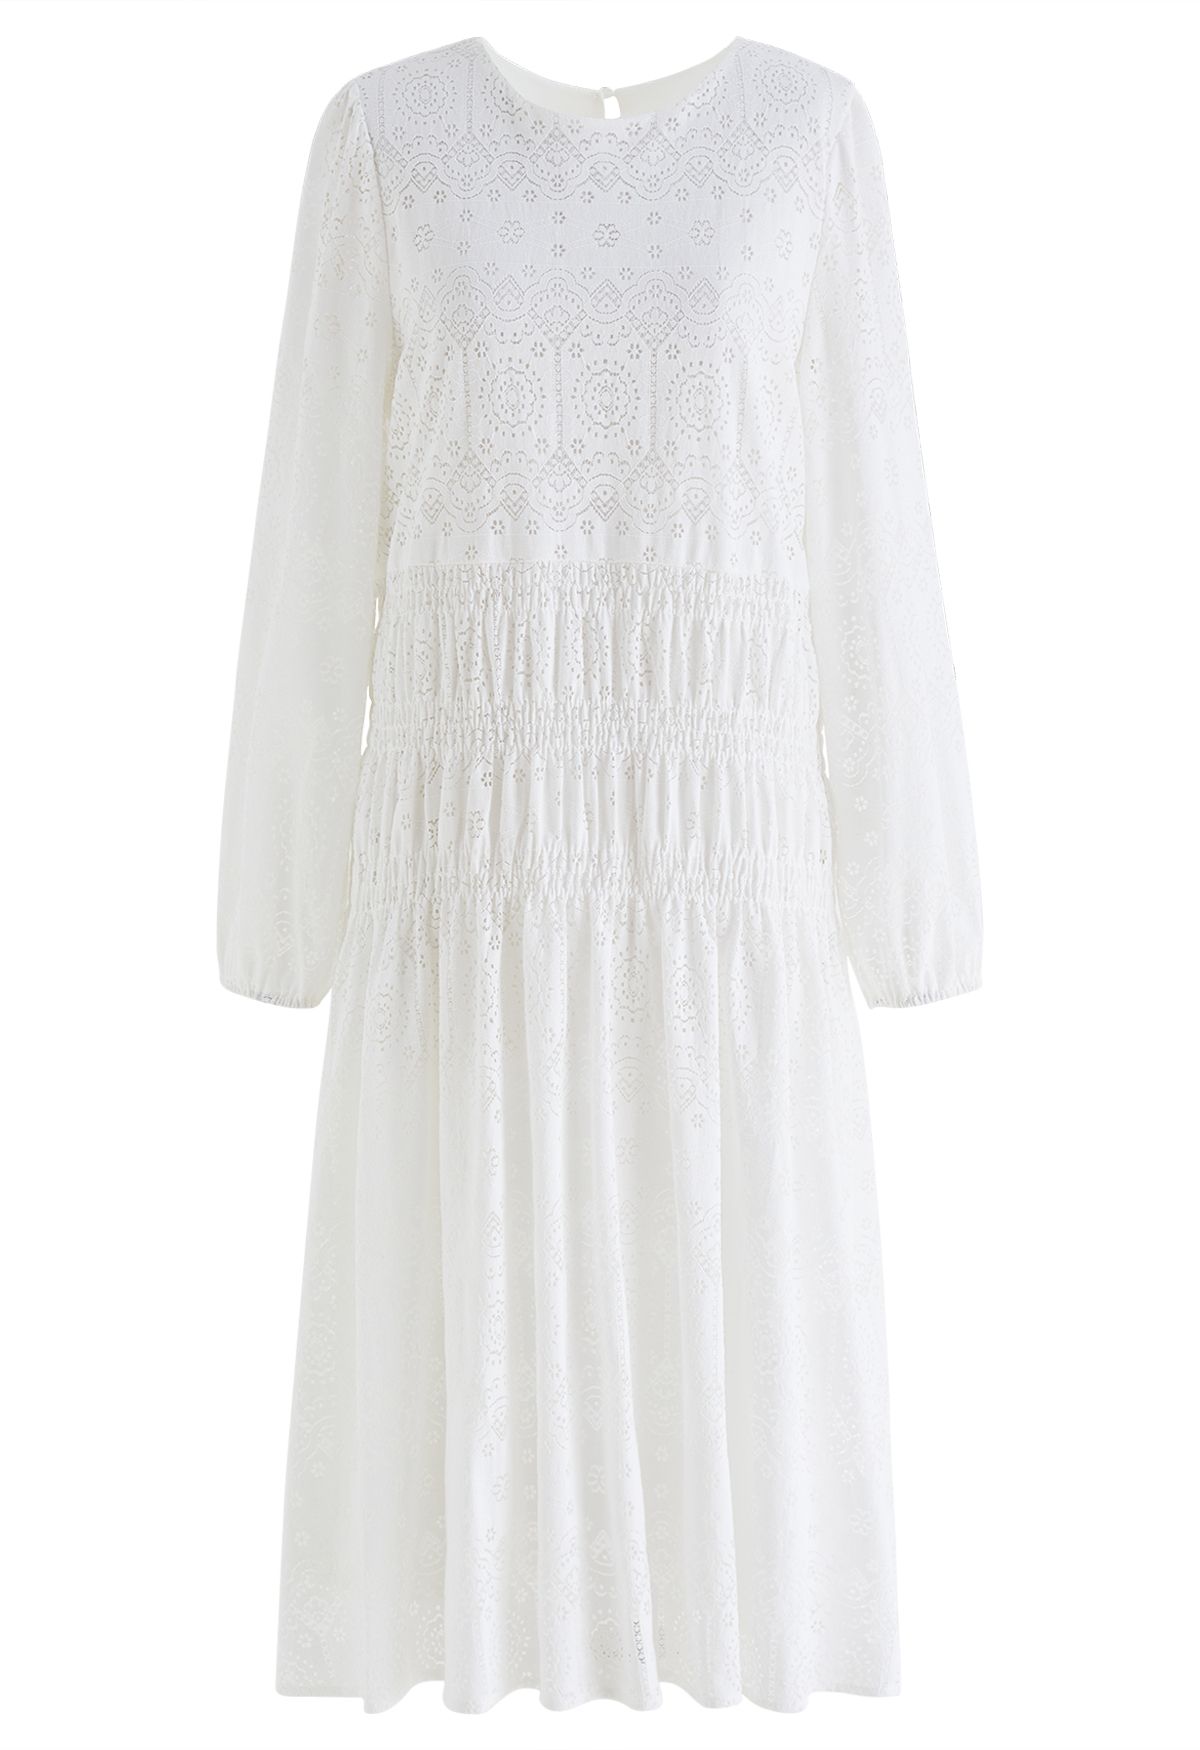 Delicate Floral Cutwork Midi Dress in White - Retro, Indie and Unique ...